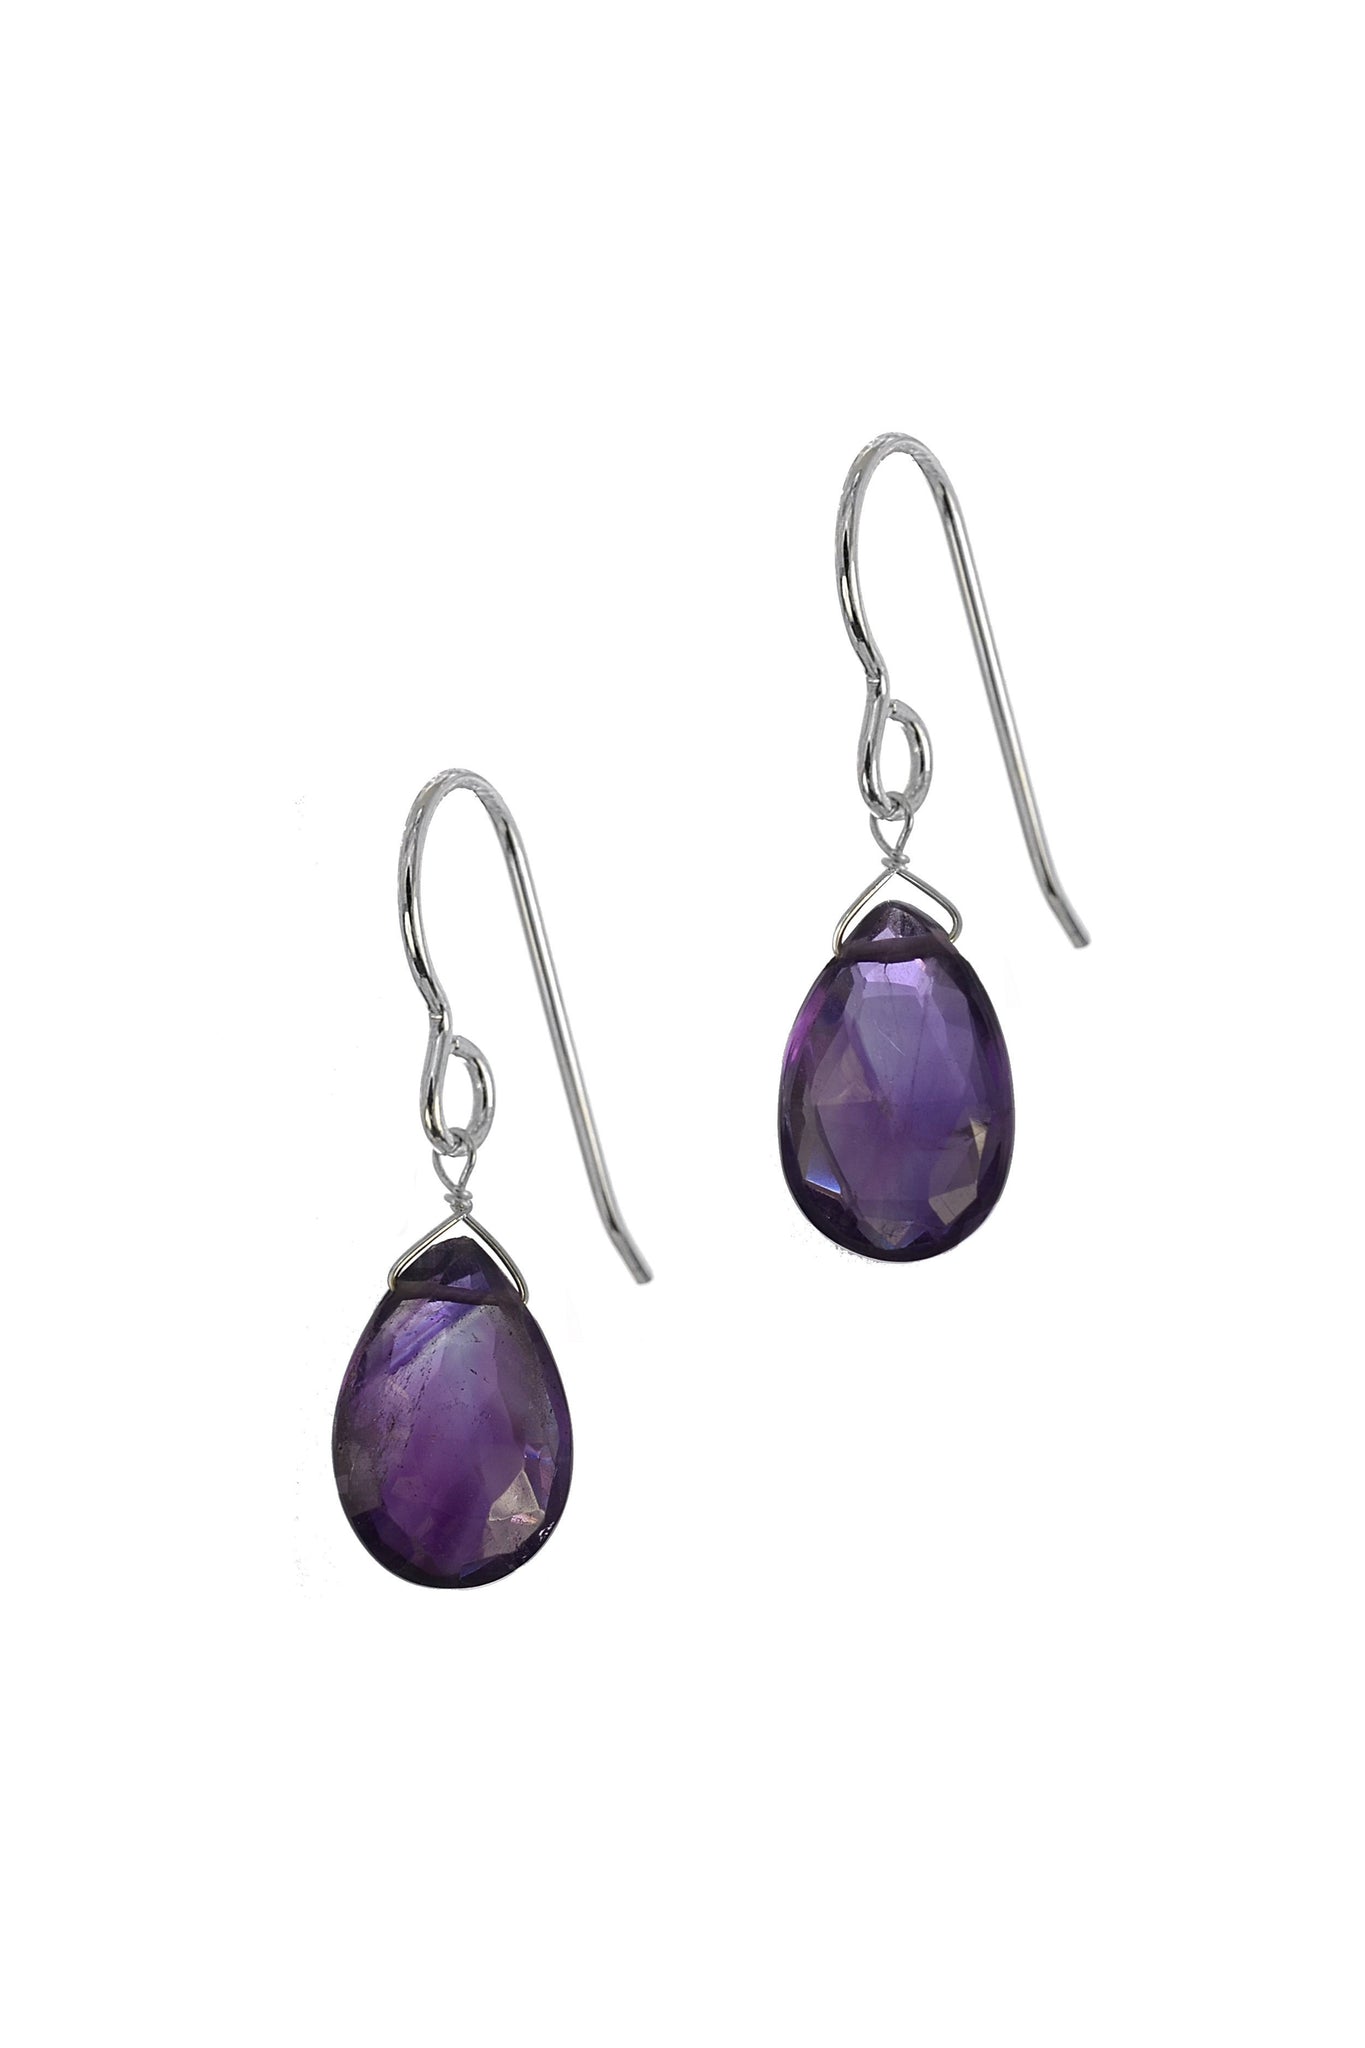 Gemstone Earrings, Amethyst Purple Stones